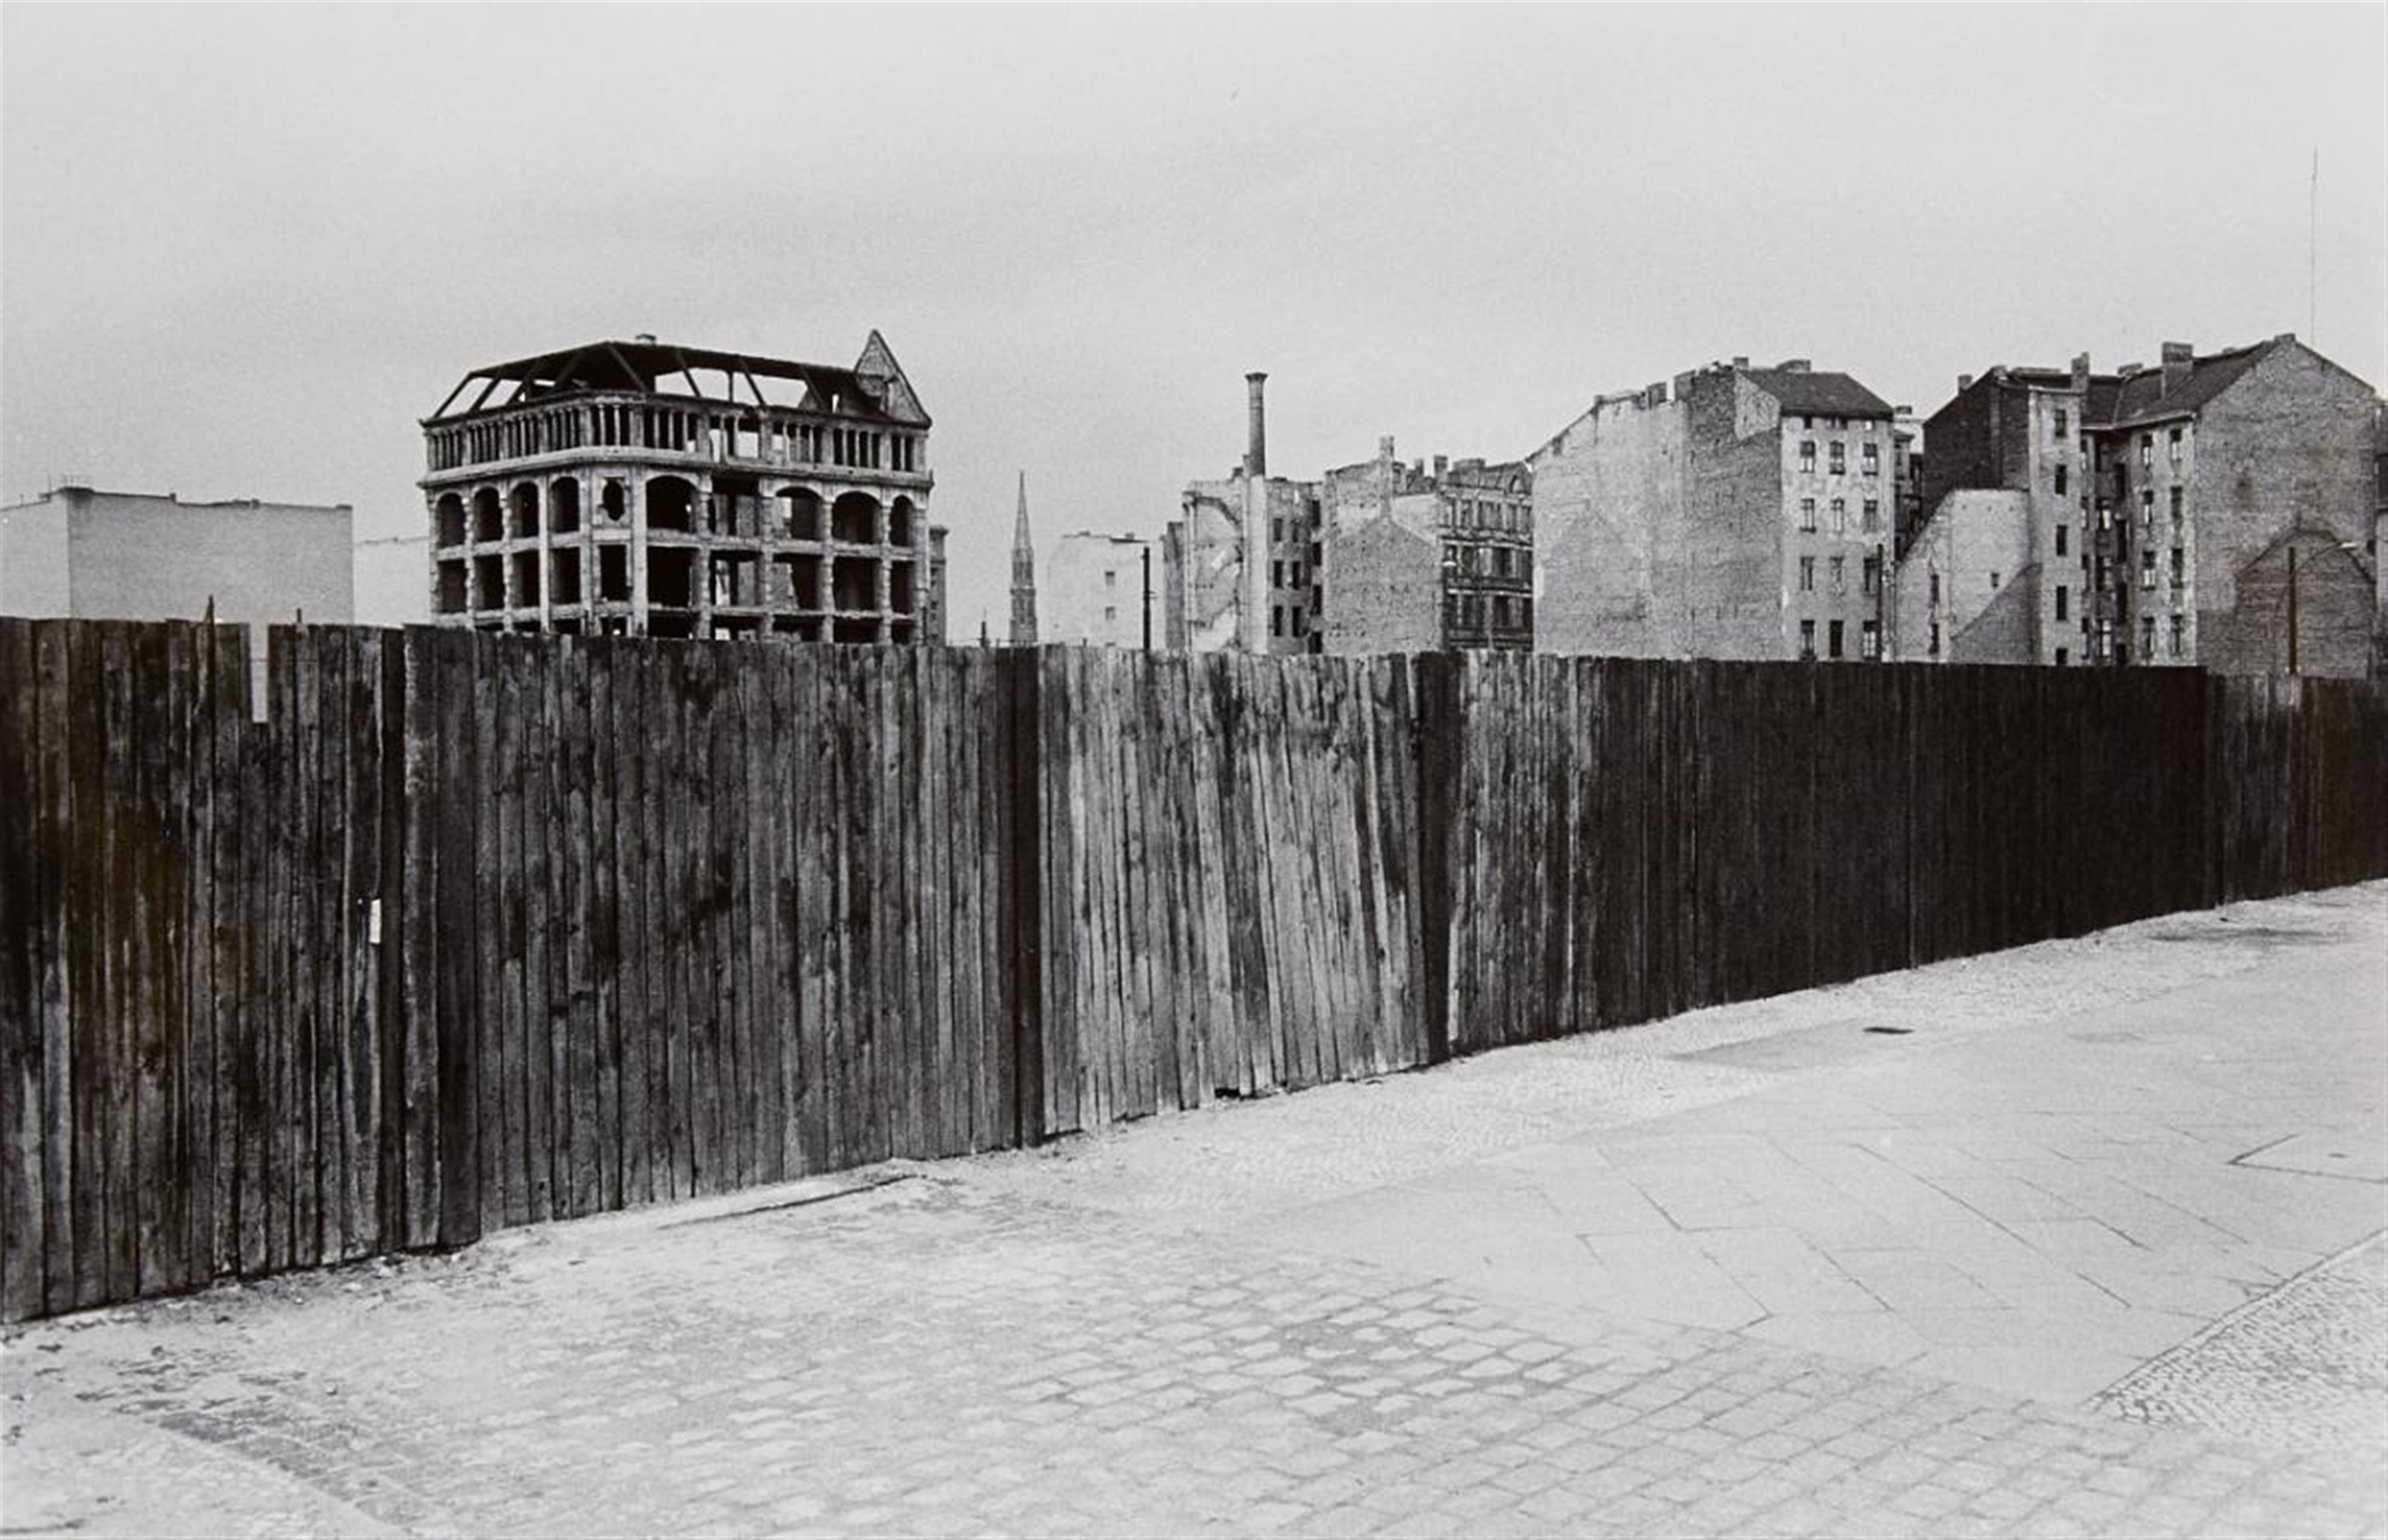 Will McBride - Bretterzaun Nähe Potsdamer Platz, Berlin (Timber fence, near Potsdamer Platz, Berlin) - image-1